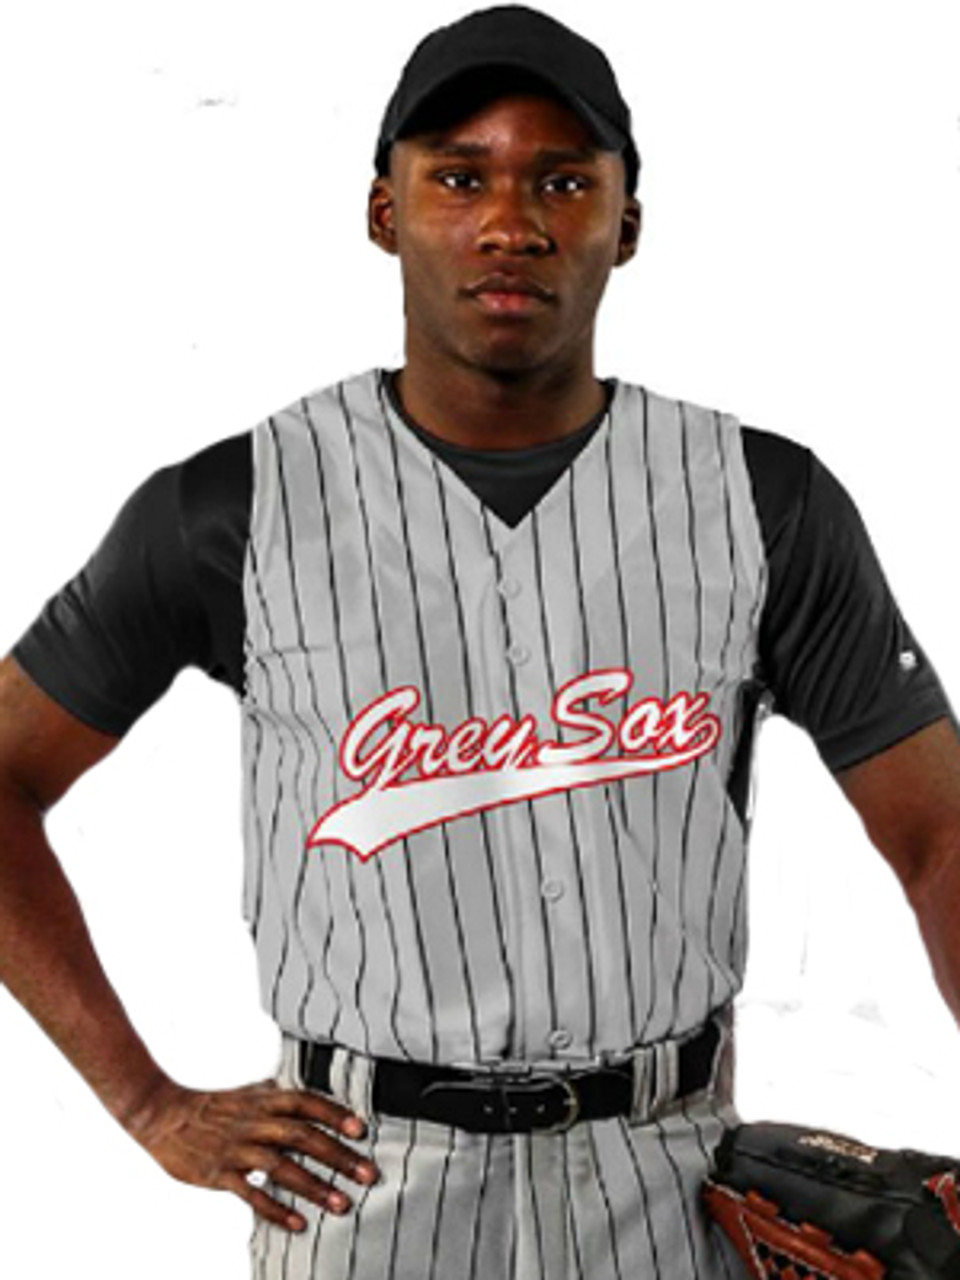 Champro Ace Youth Sleeveless Baseball Jersey, L / Gray/Black